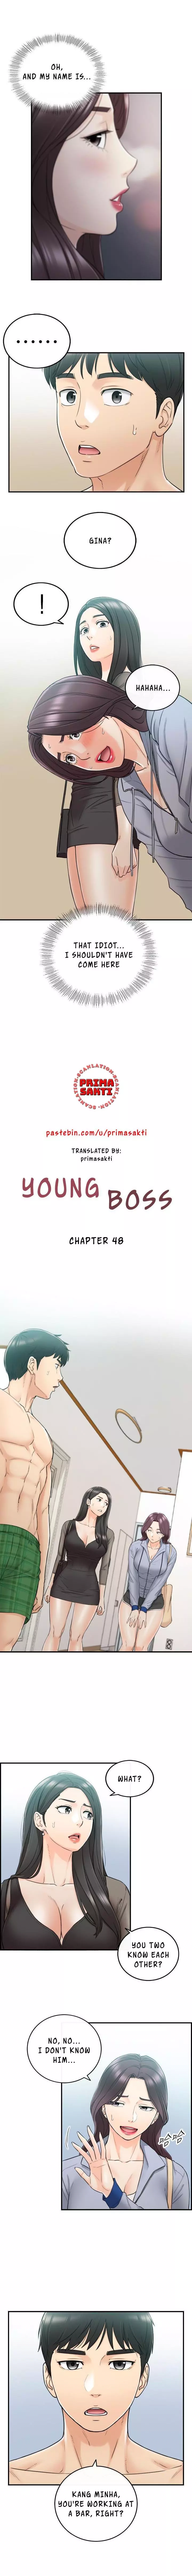 Young Boss Manhwa 01-73 379ページ